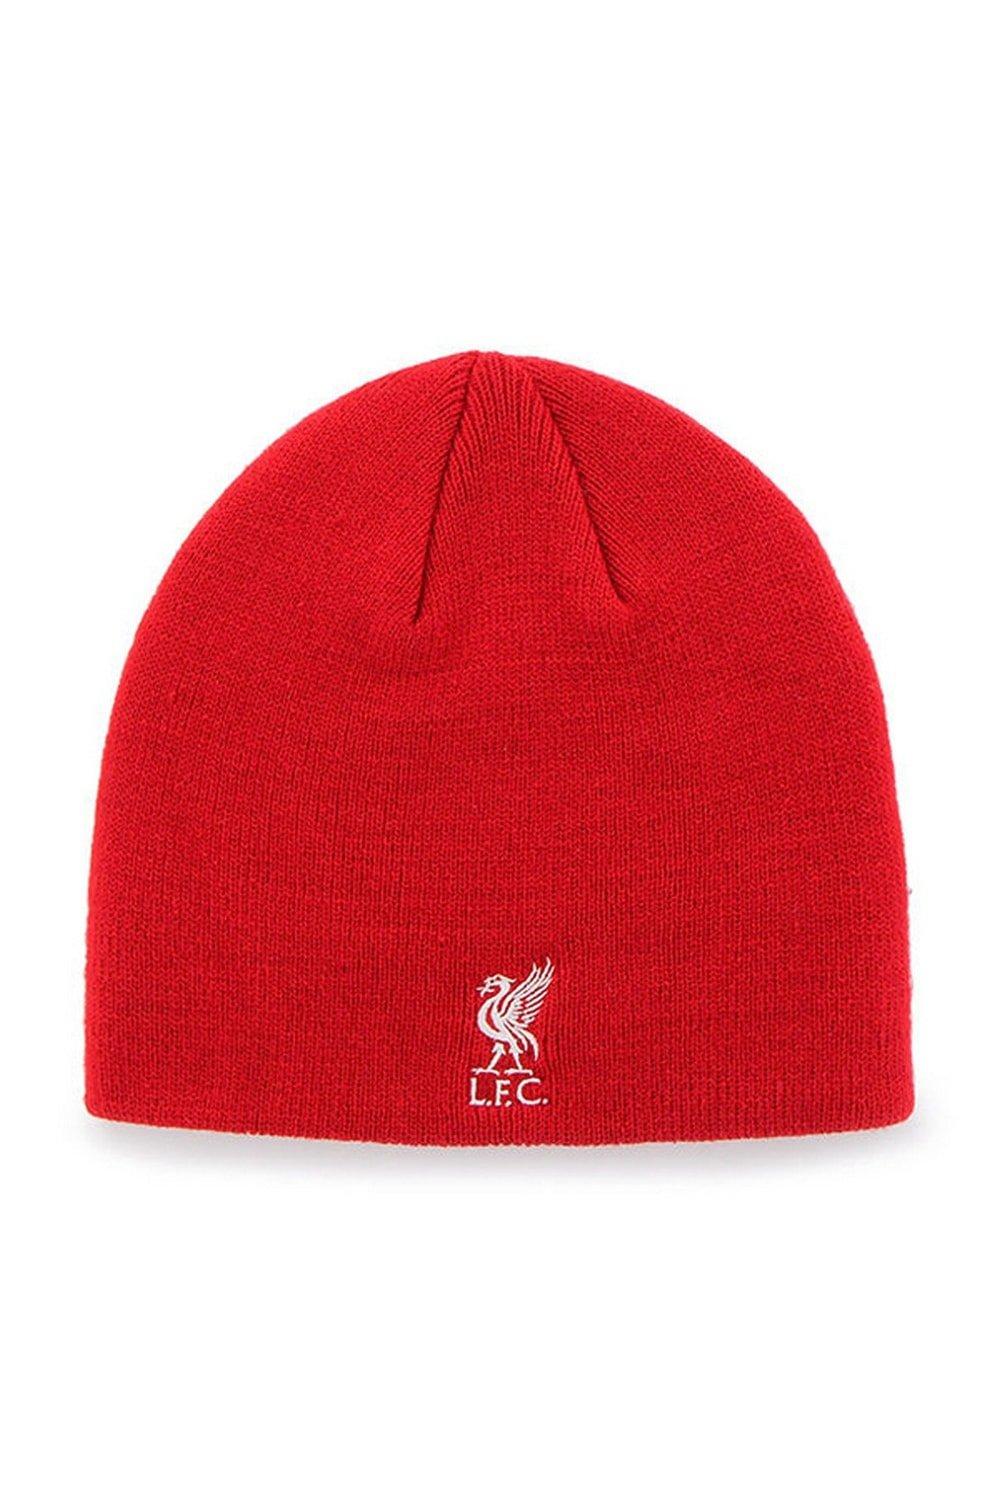 Официальная вязаная шапка Liverpool FC, красный вязаная шапка бини теплая шапка бини с манжетами и черепом ярких цветов для взрослых подростковая вязаная манжета короткая рыбацкая шапк